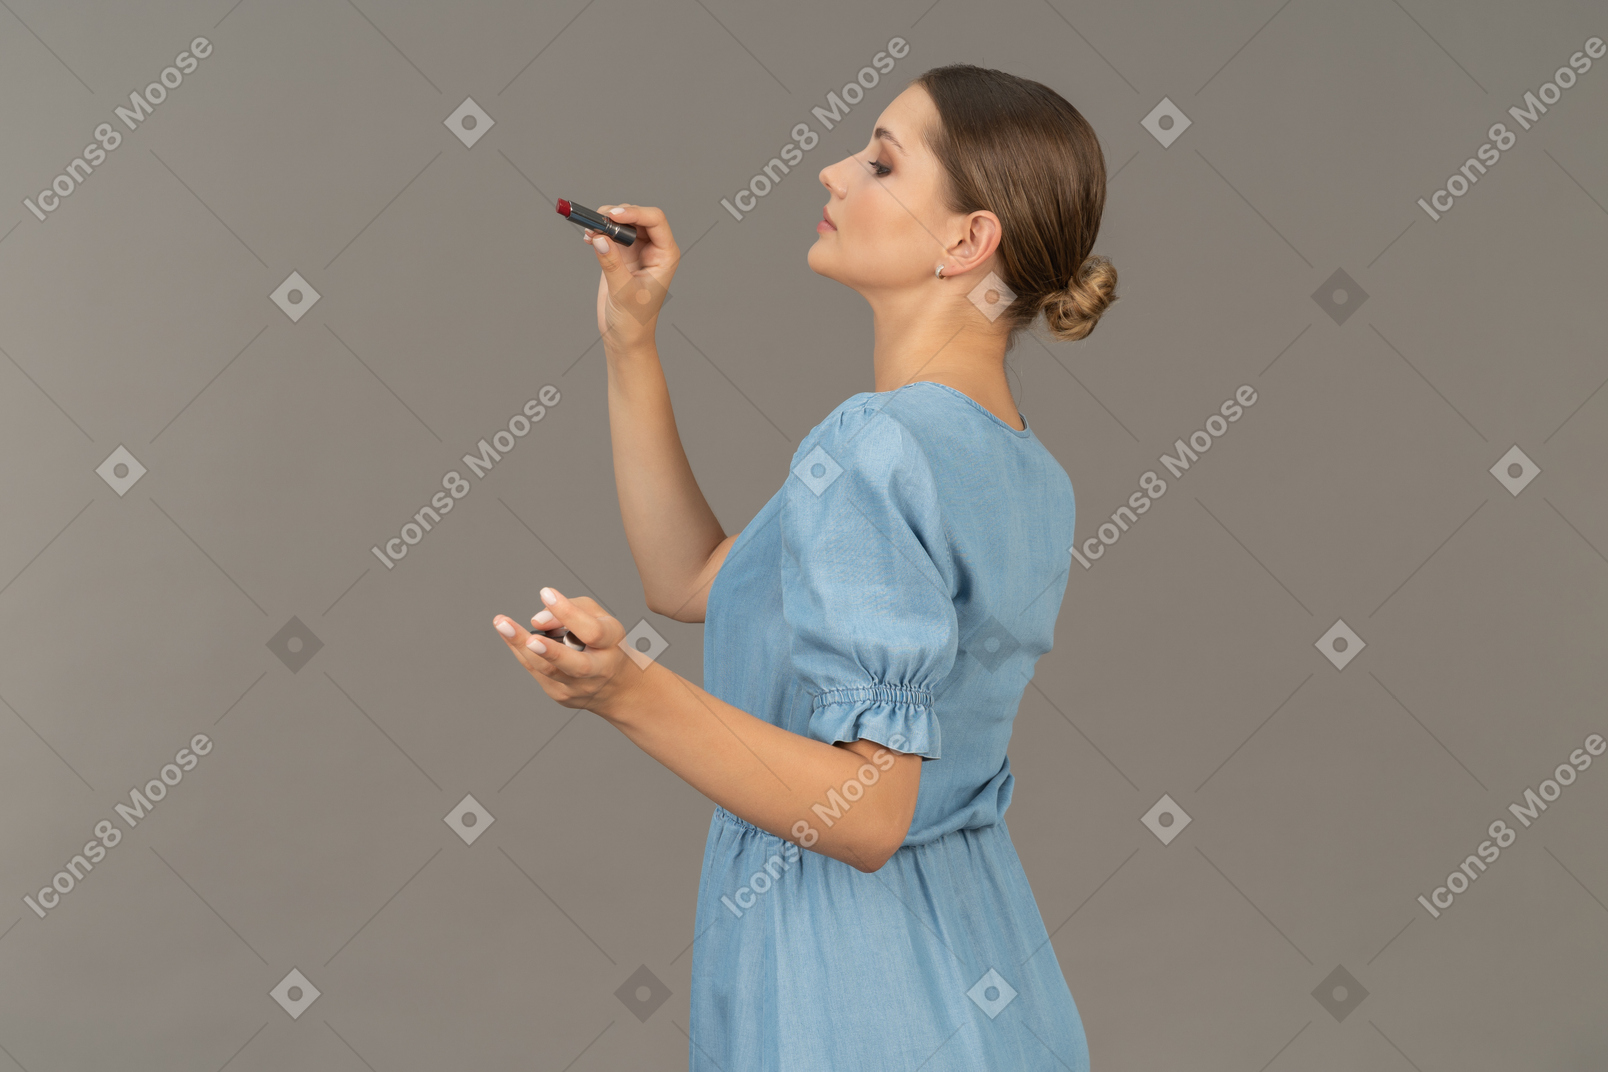 Vista lateral de uma jovem de vestido azul segurando um batom